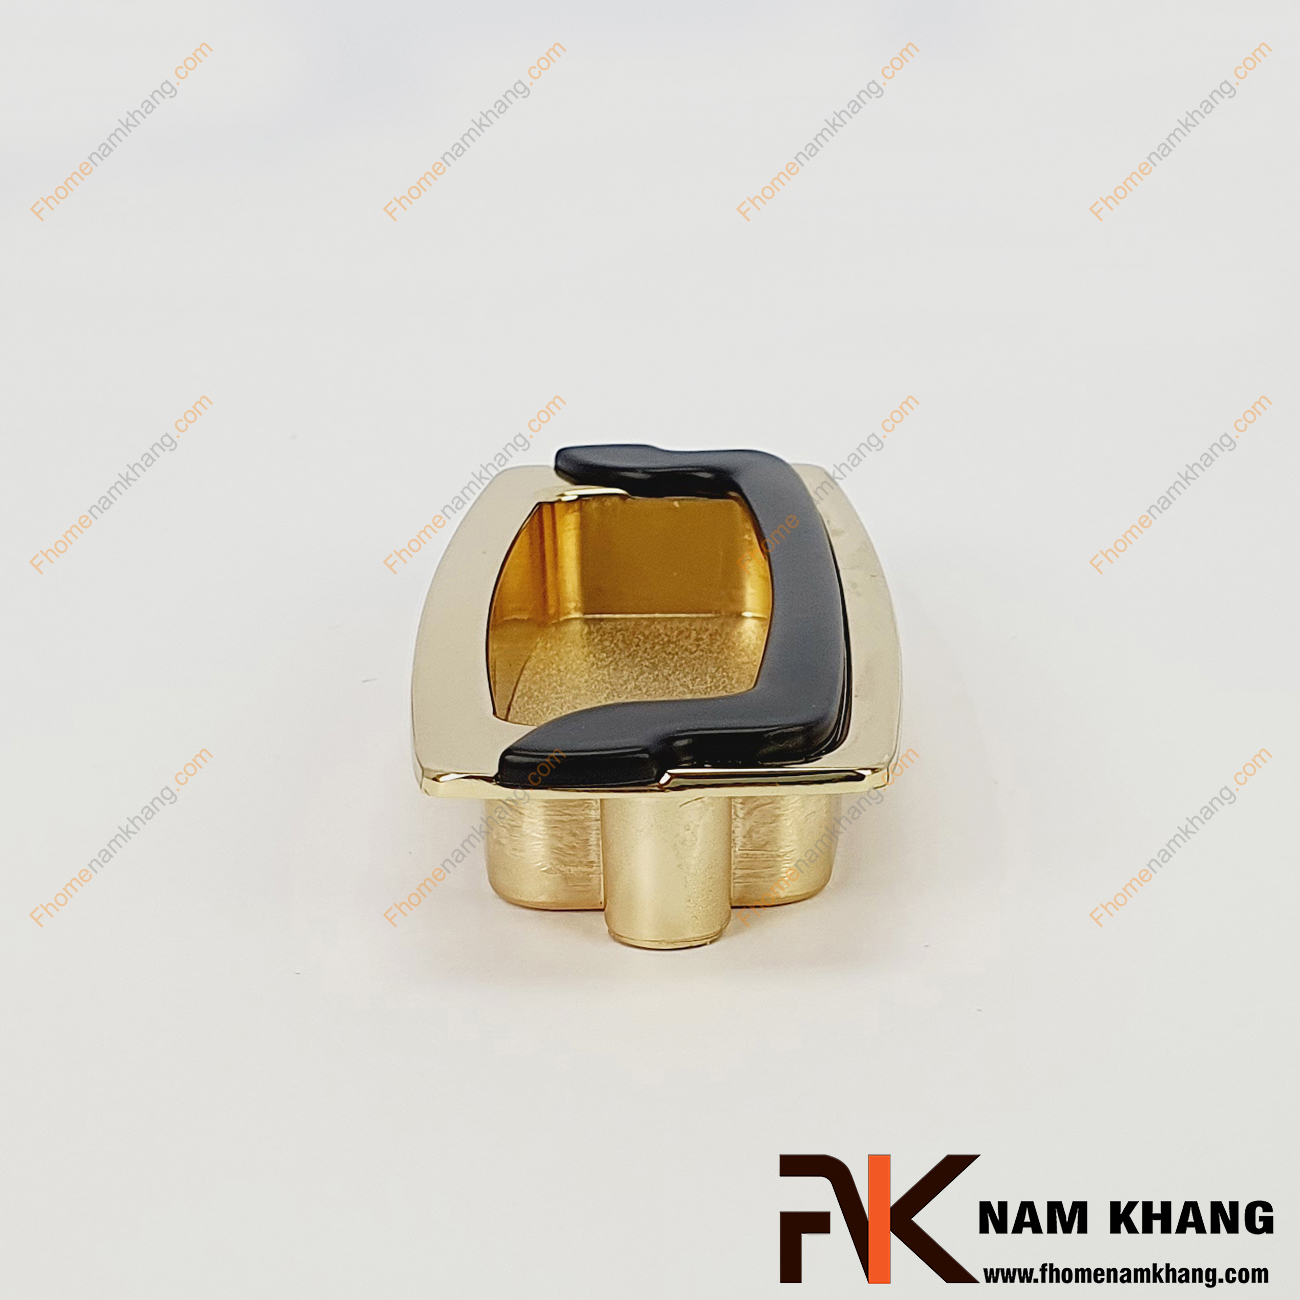 Tay nắm âm tủ màu vàng NK064-96VD là loại tay nắm chuyên dùng cho các loại tủ đặt ở những nơi có không gian hạn chế hoặc dùng để nâng cao tính thẫm mỹ của sản phẩm